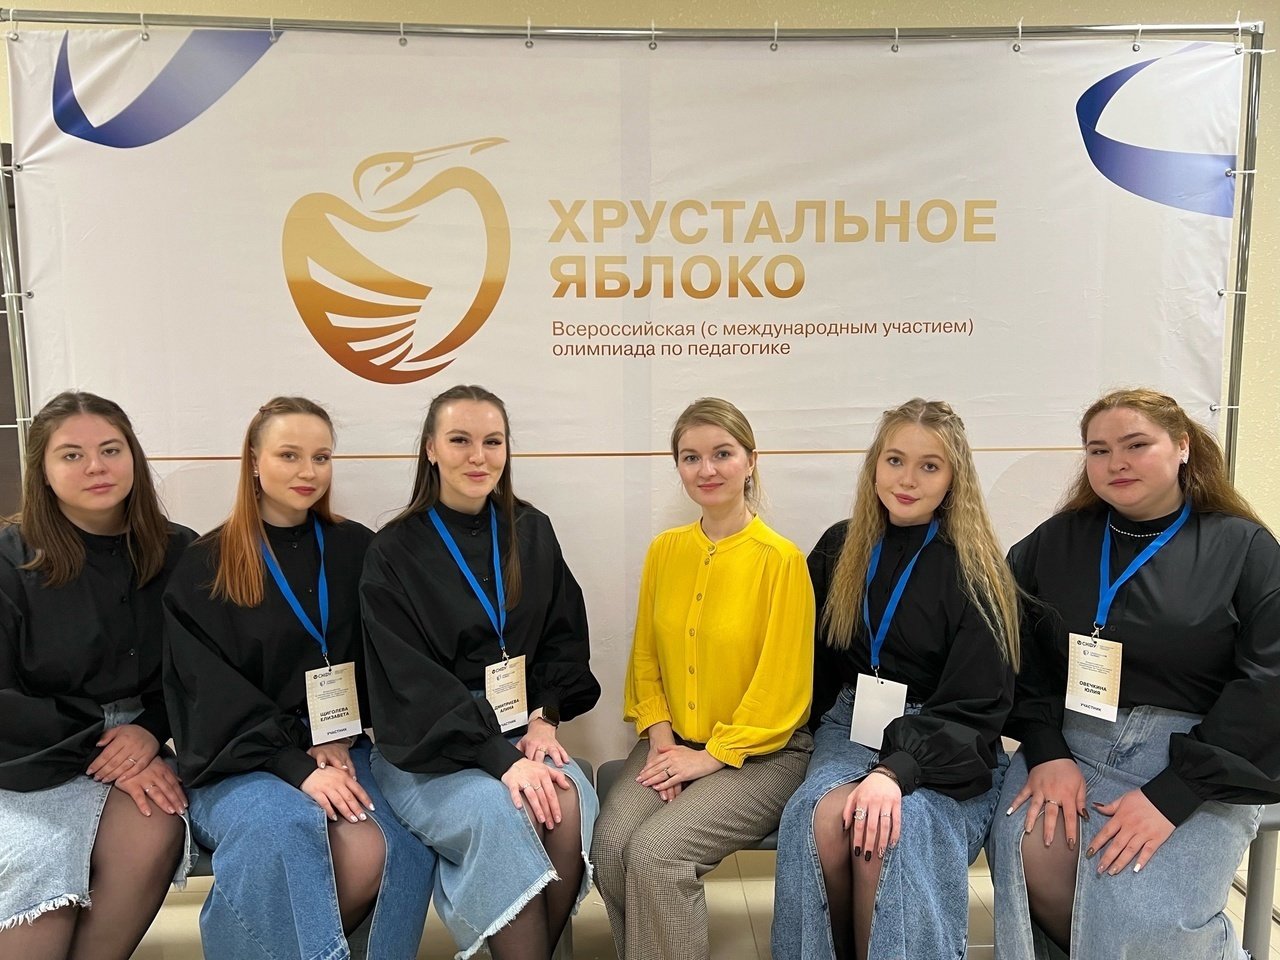 Студентки Глазовского университета второй год подряд побеждают на олимпиаде по педагогике Хрустальное яблоко